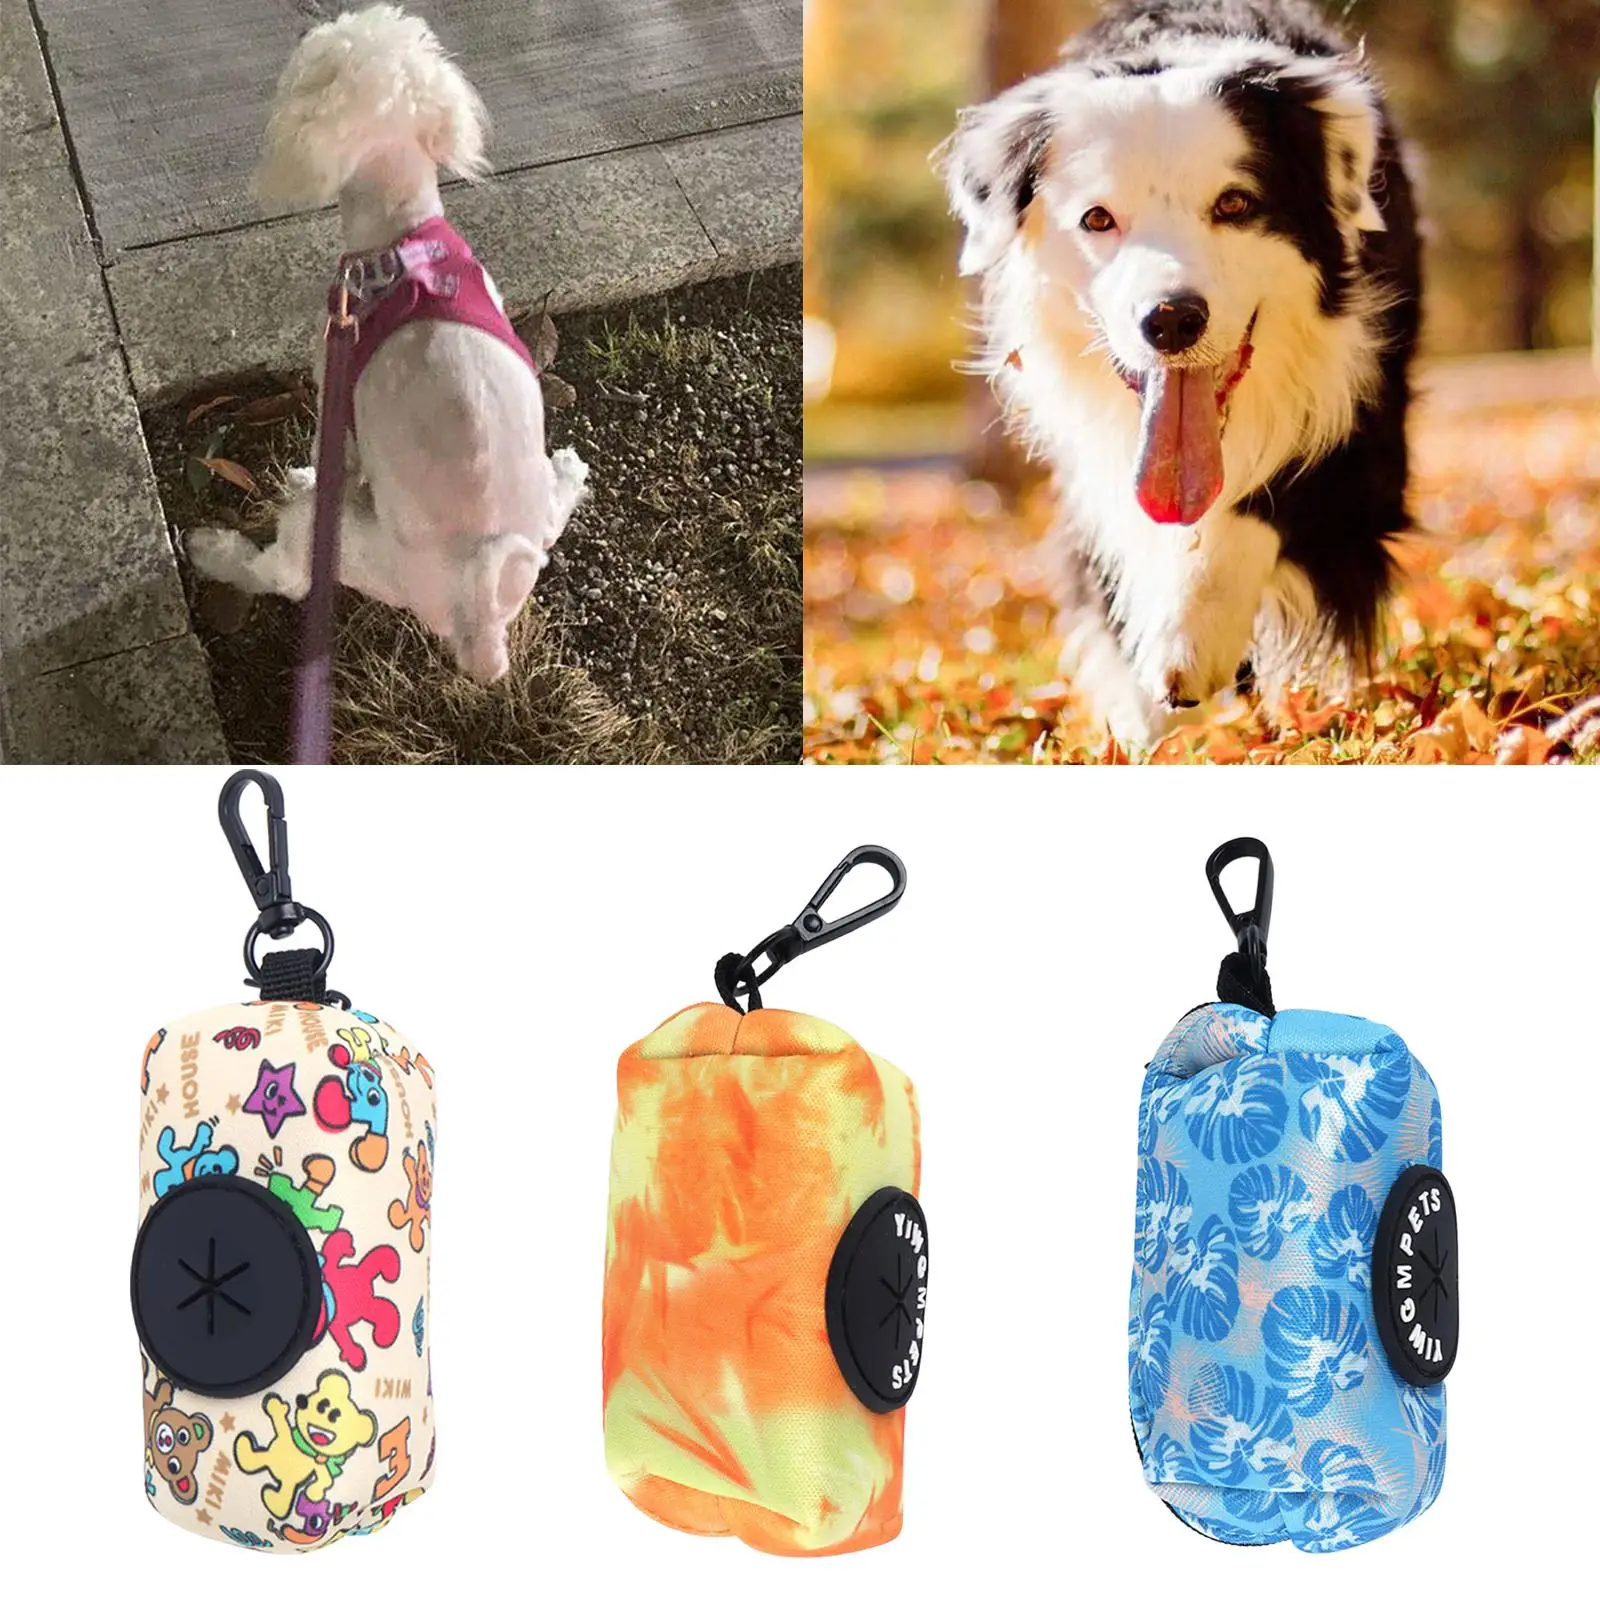 Dog Poop Bag Holder Carry Tube with Buckle Clips Pet Waste Bag Dispenser